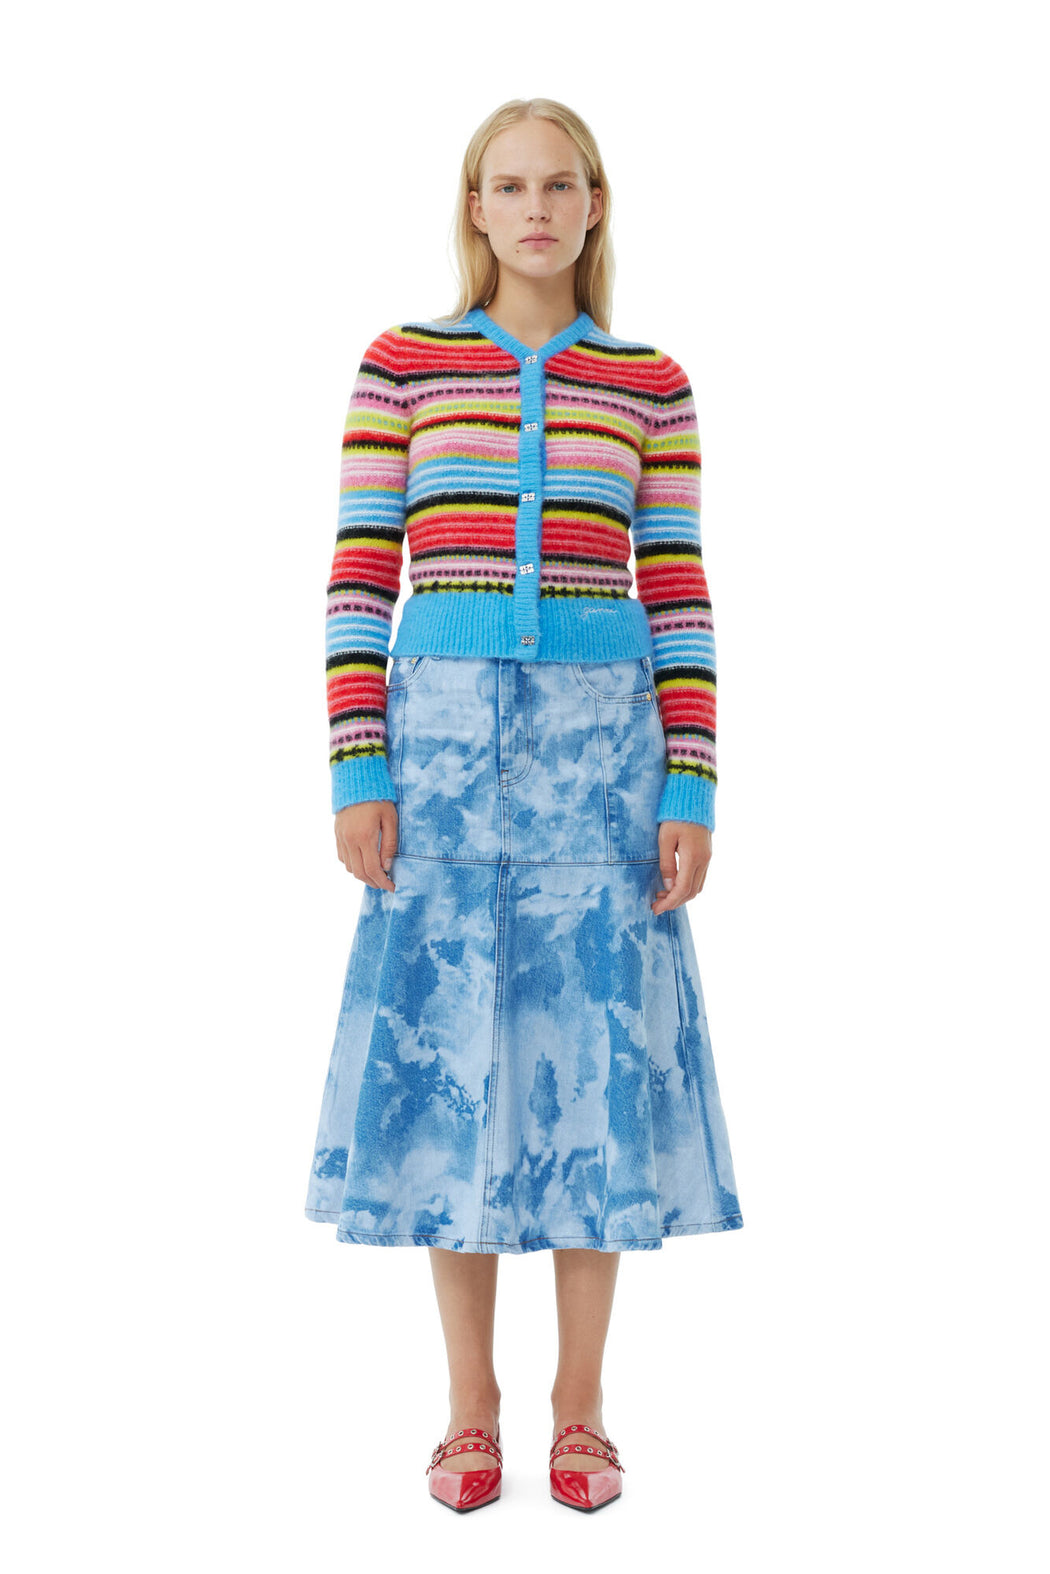 Ganni - Multicolor Soft Wool Stripe Cardigan